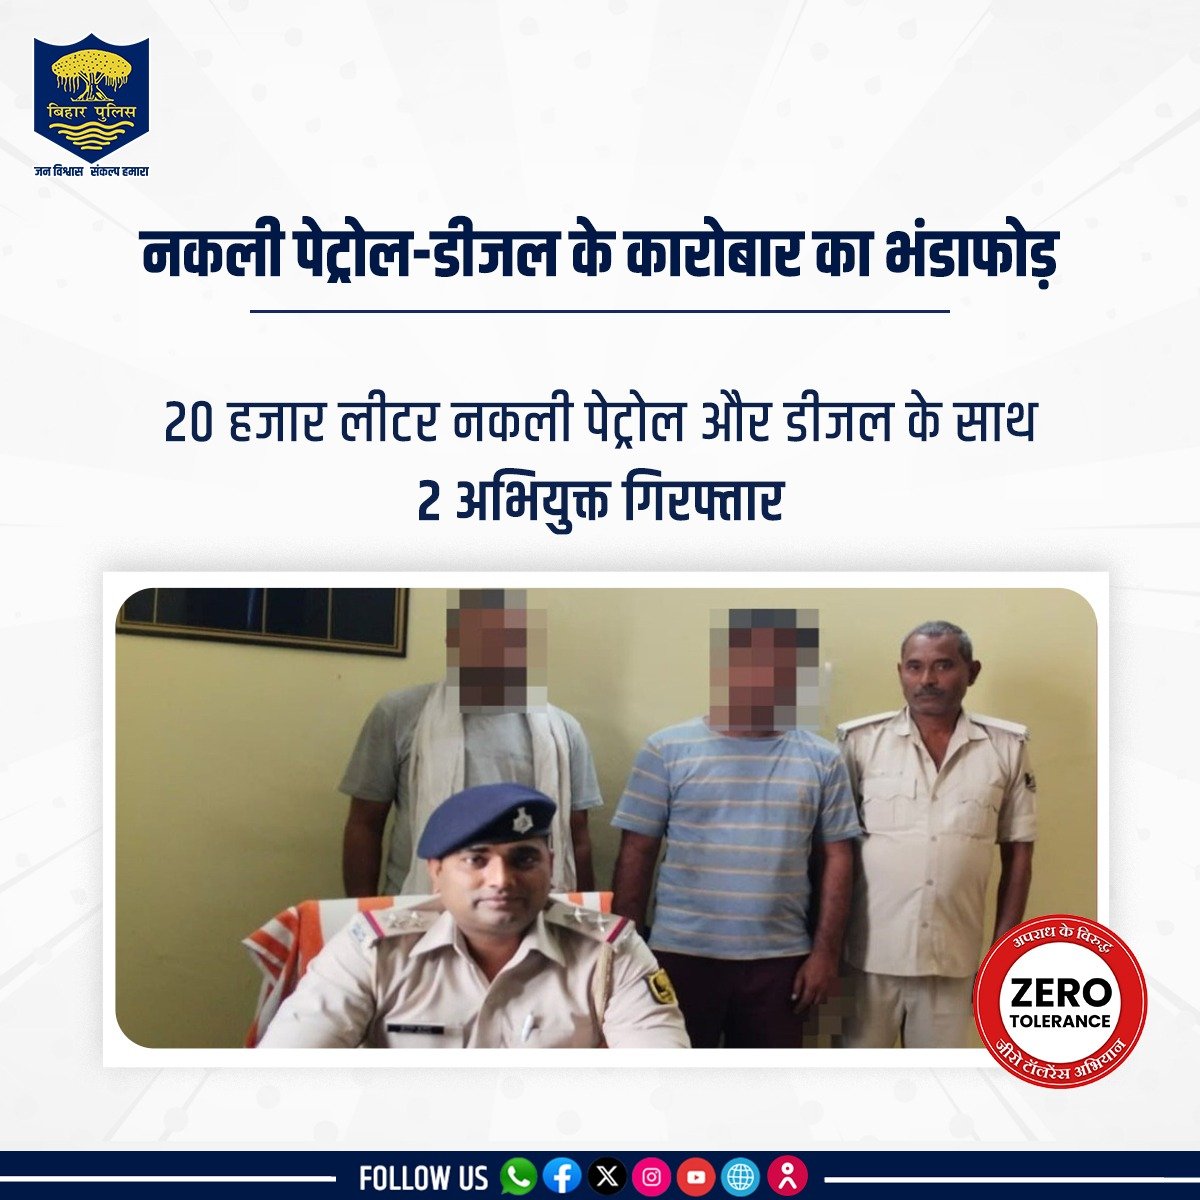 बिहार पुलिस ने गोपालगंज जिले के कुचायकोट थानांतर्गत वाहन जांच के दौरान 20 हजार लीटर नकली पेट्रोल और डीजल के साथ 2 अभियुक्त को गिरफ्तार किया। . . #BiharPolice #HainTaiyarHum #Bihar